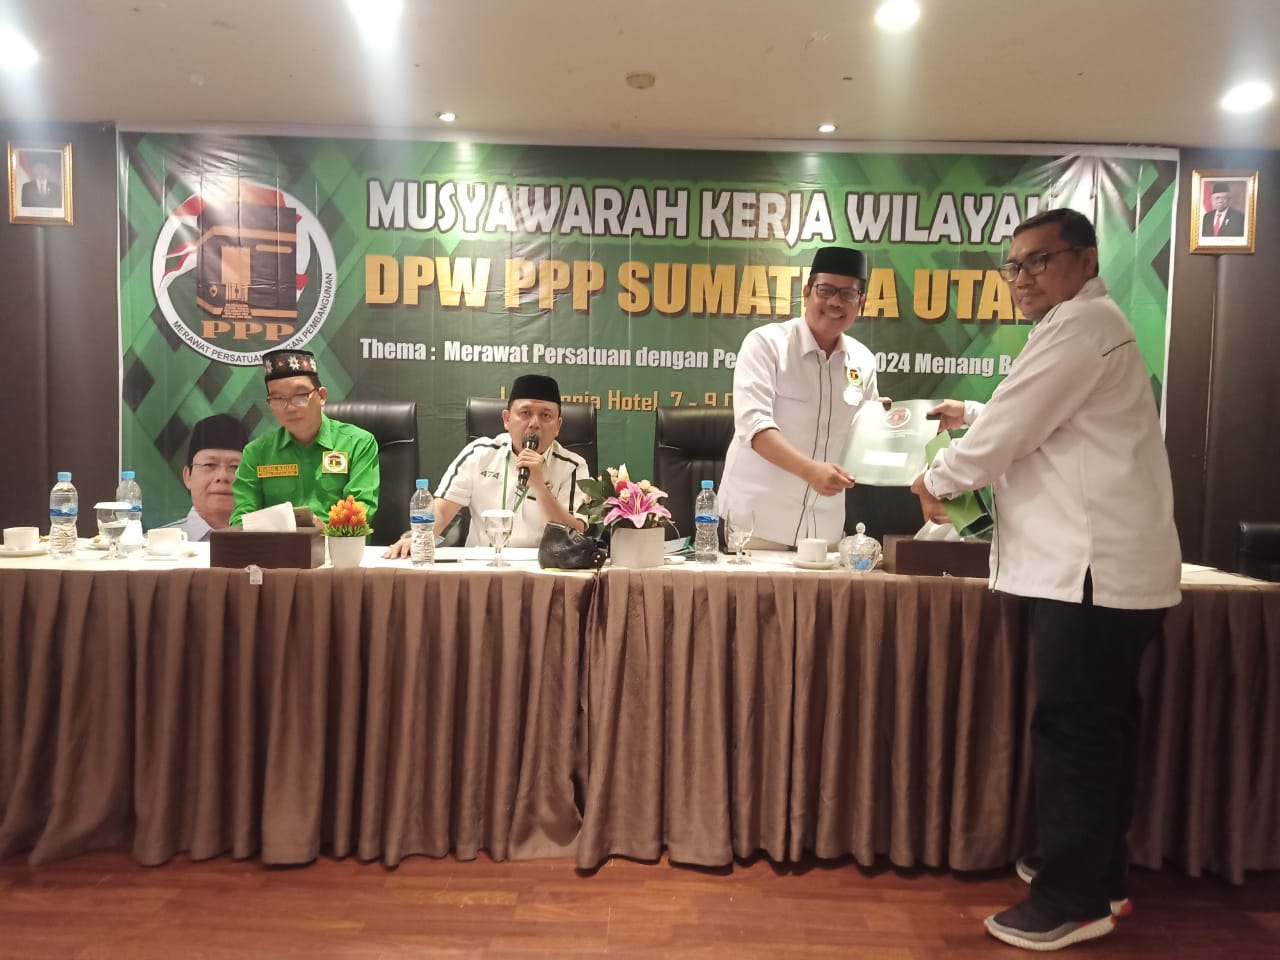 Suasana Musyawarah Kerja Wilayah I PPP Sumatera Utara di Hotel Le Polonia Medan.beritasore/Ist